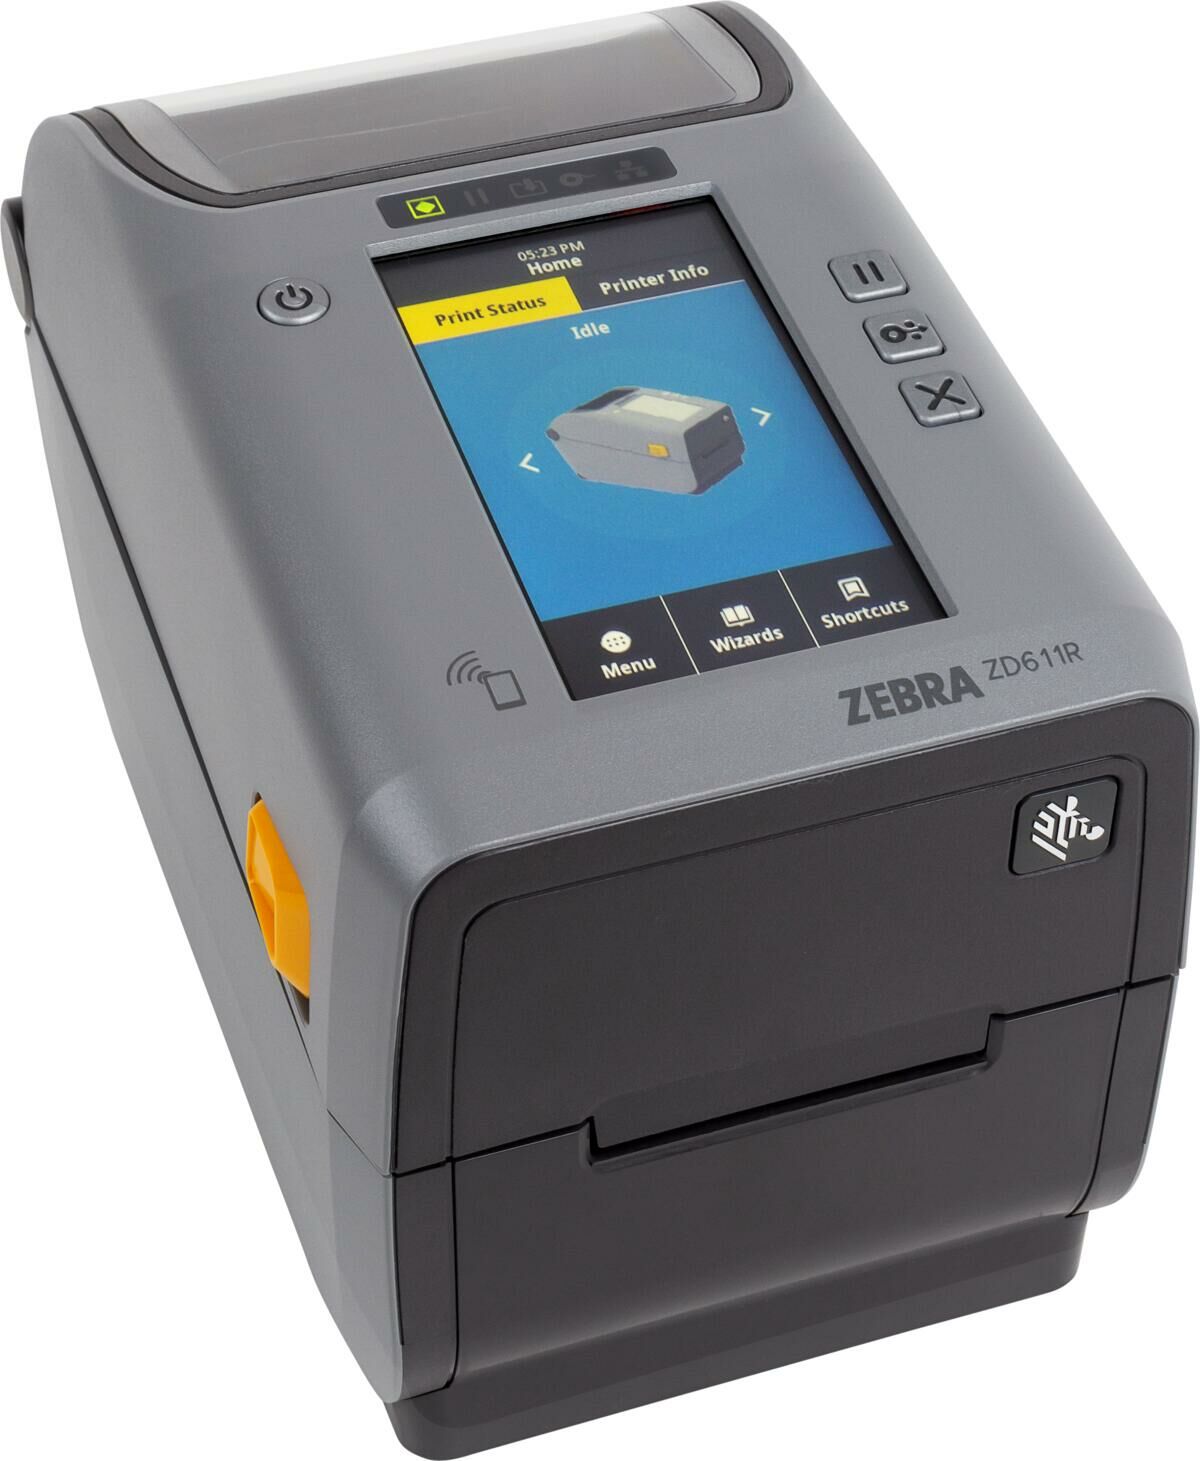 Zebra ZD611R RFID Barkod Yazıcı, Termal Transfer, 203dpi